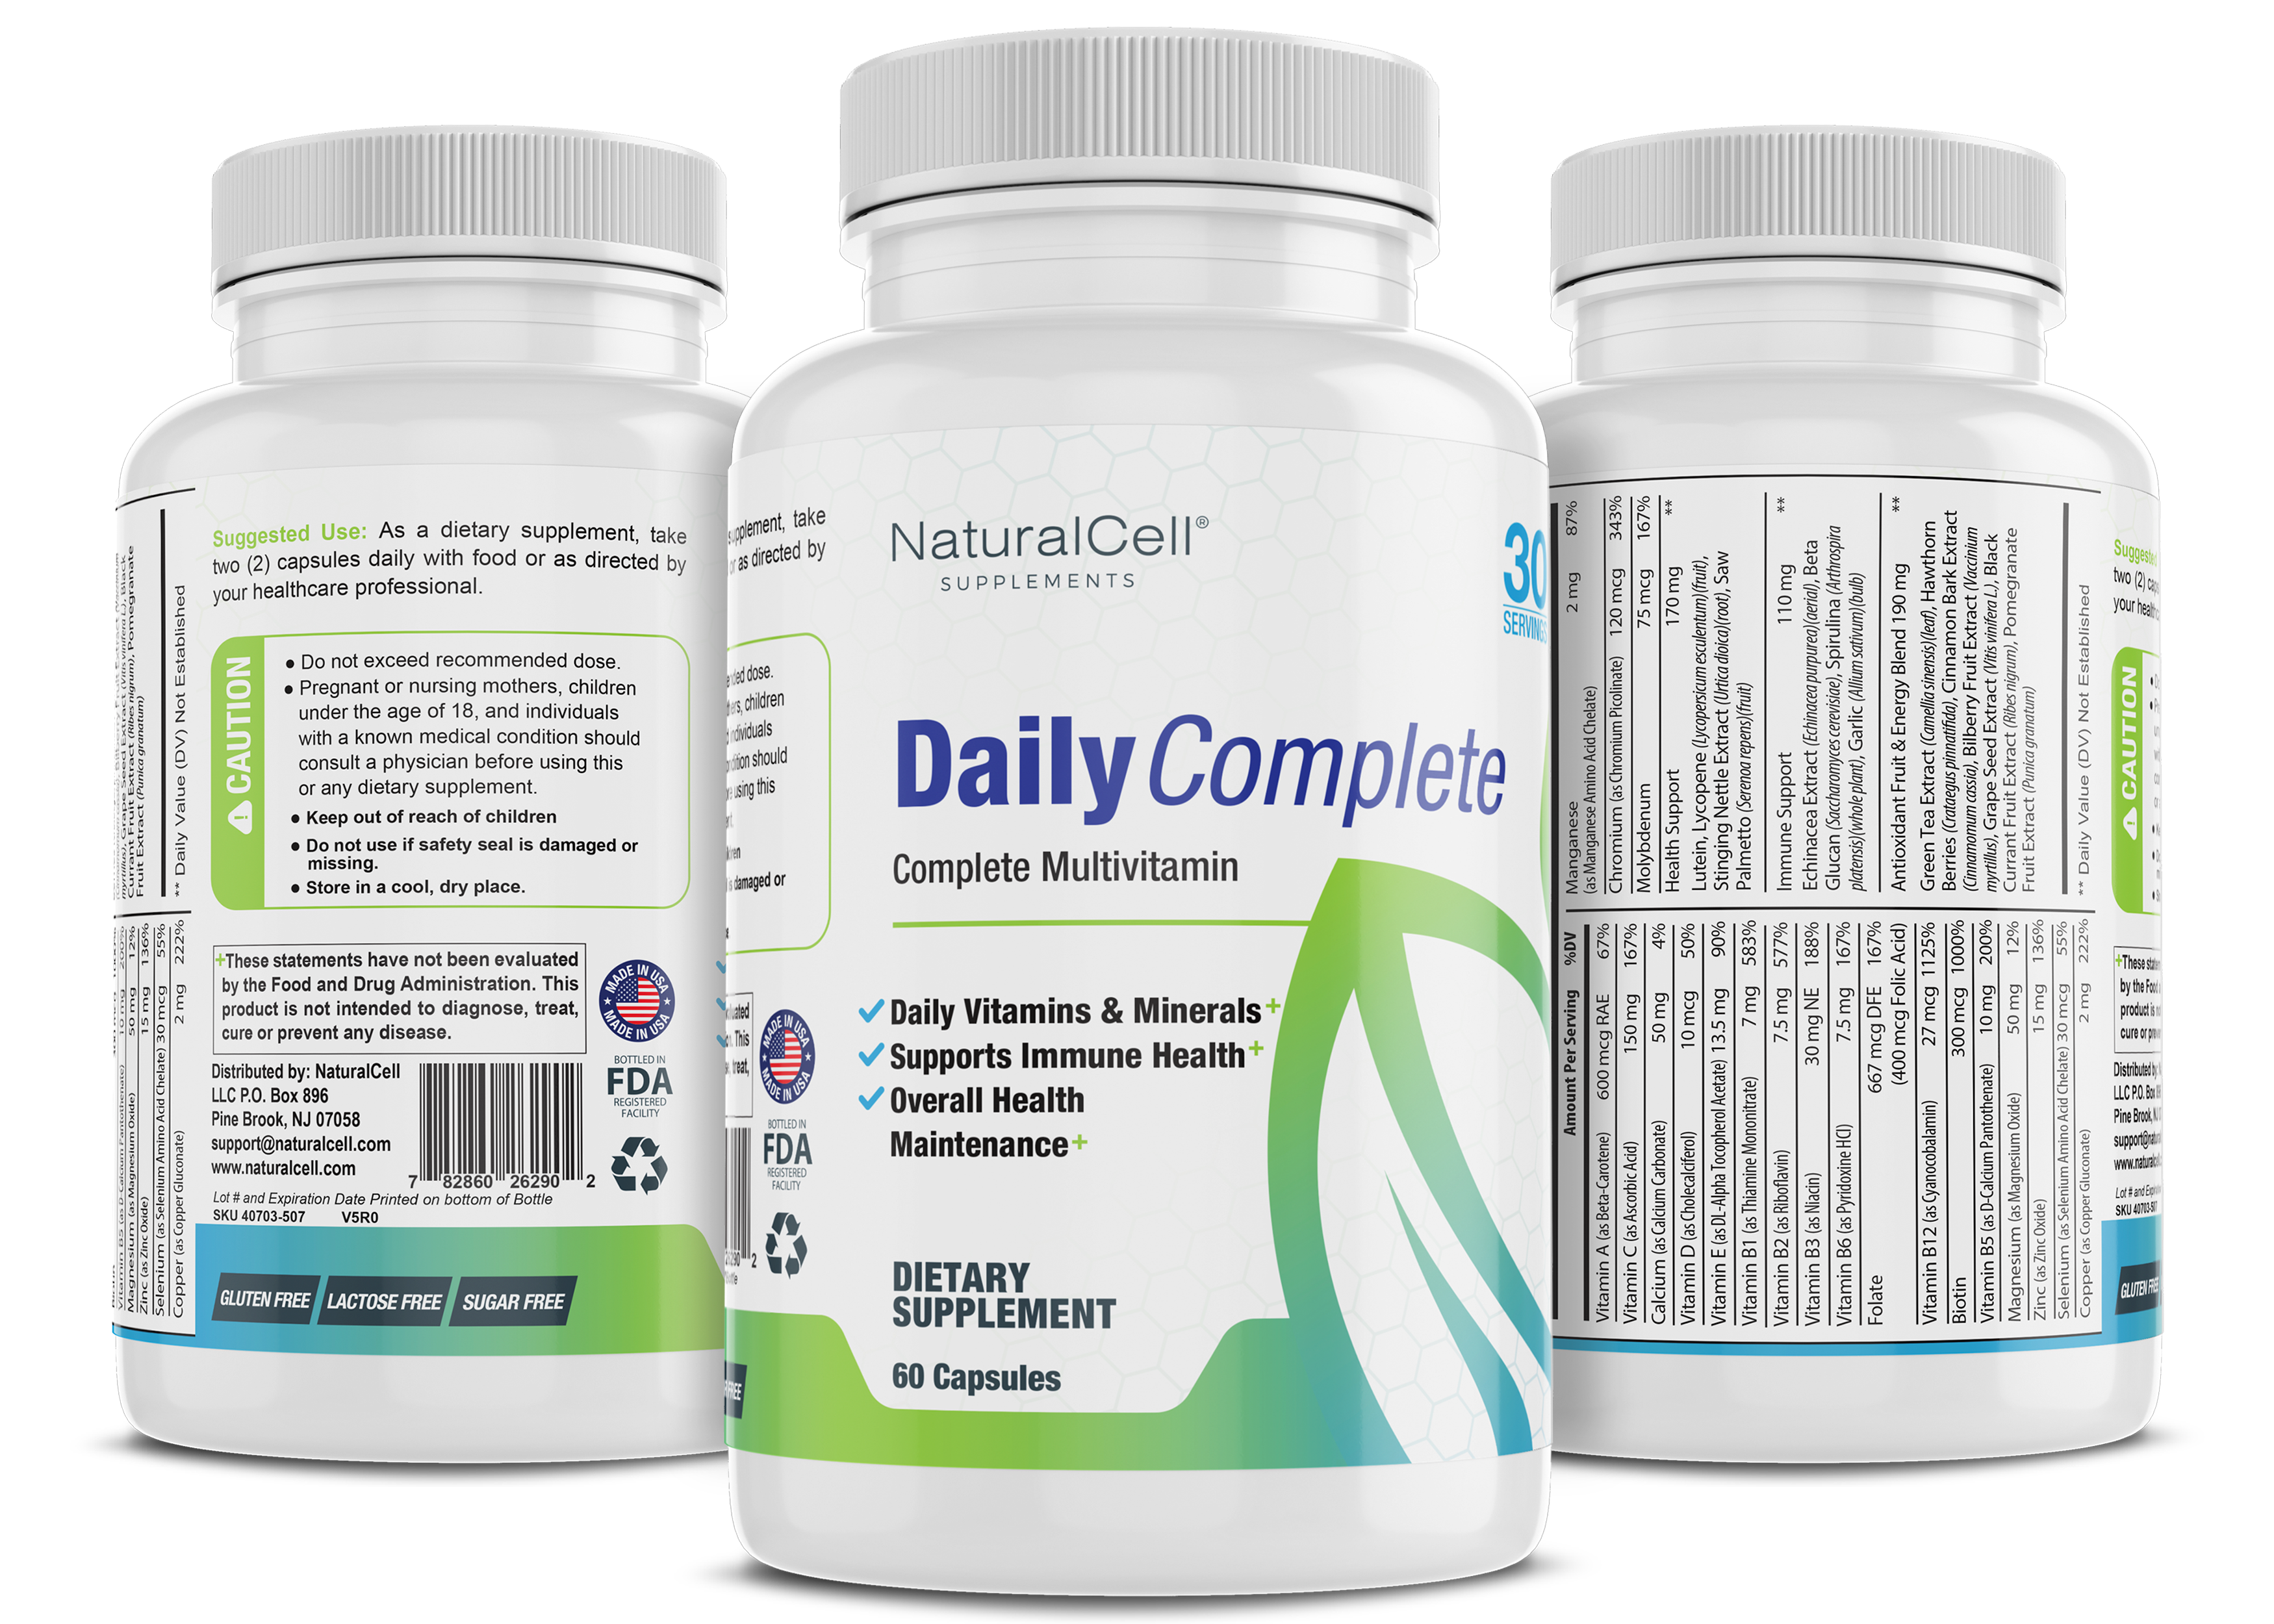 Daily Complete - Complete Multi Vitamin